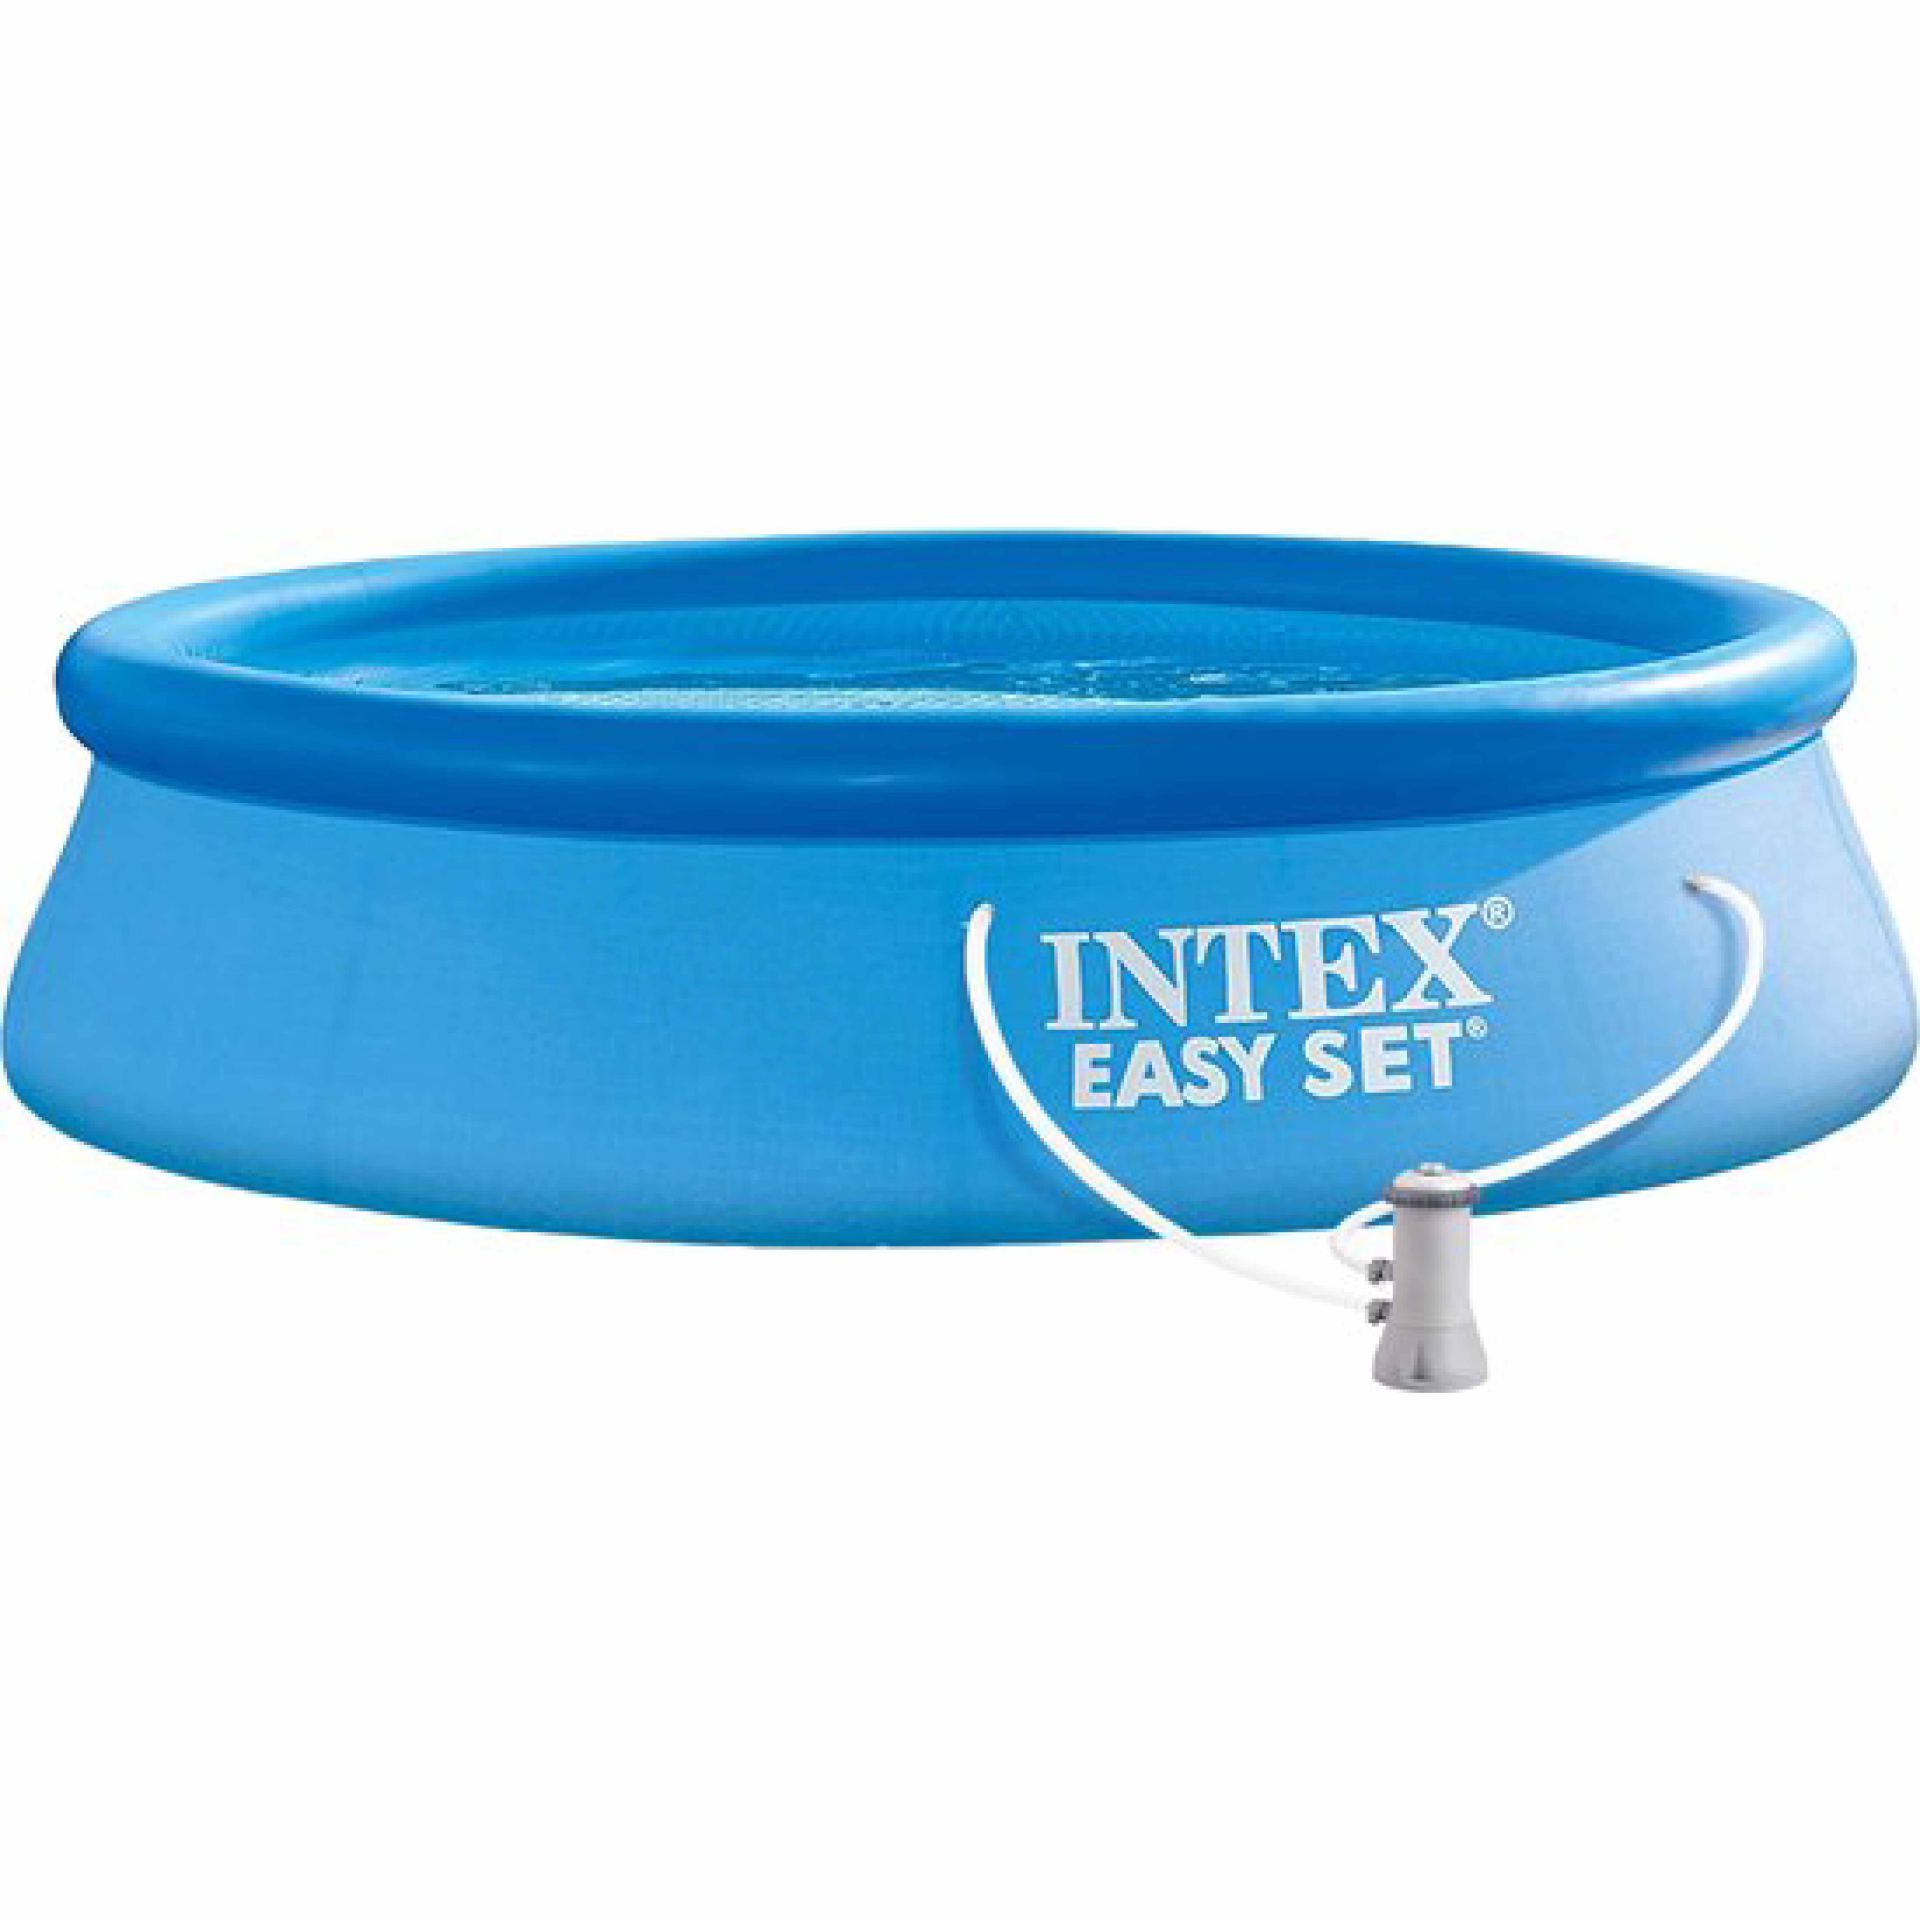 Intex easy set pool set 366cm x 76cm